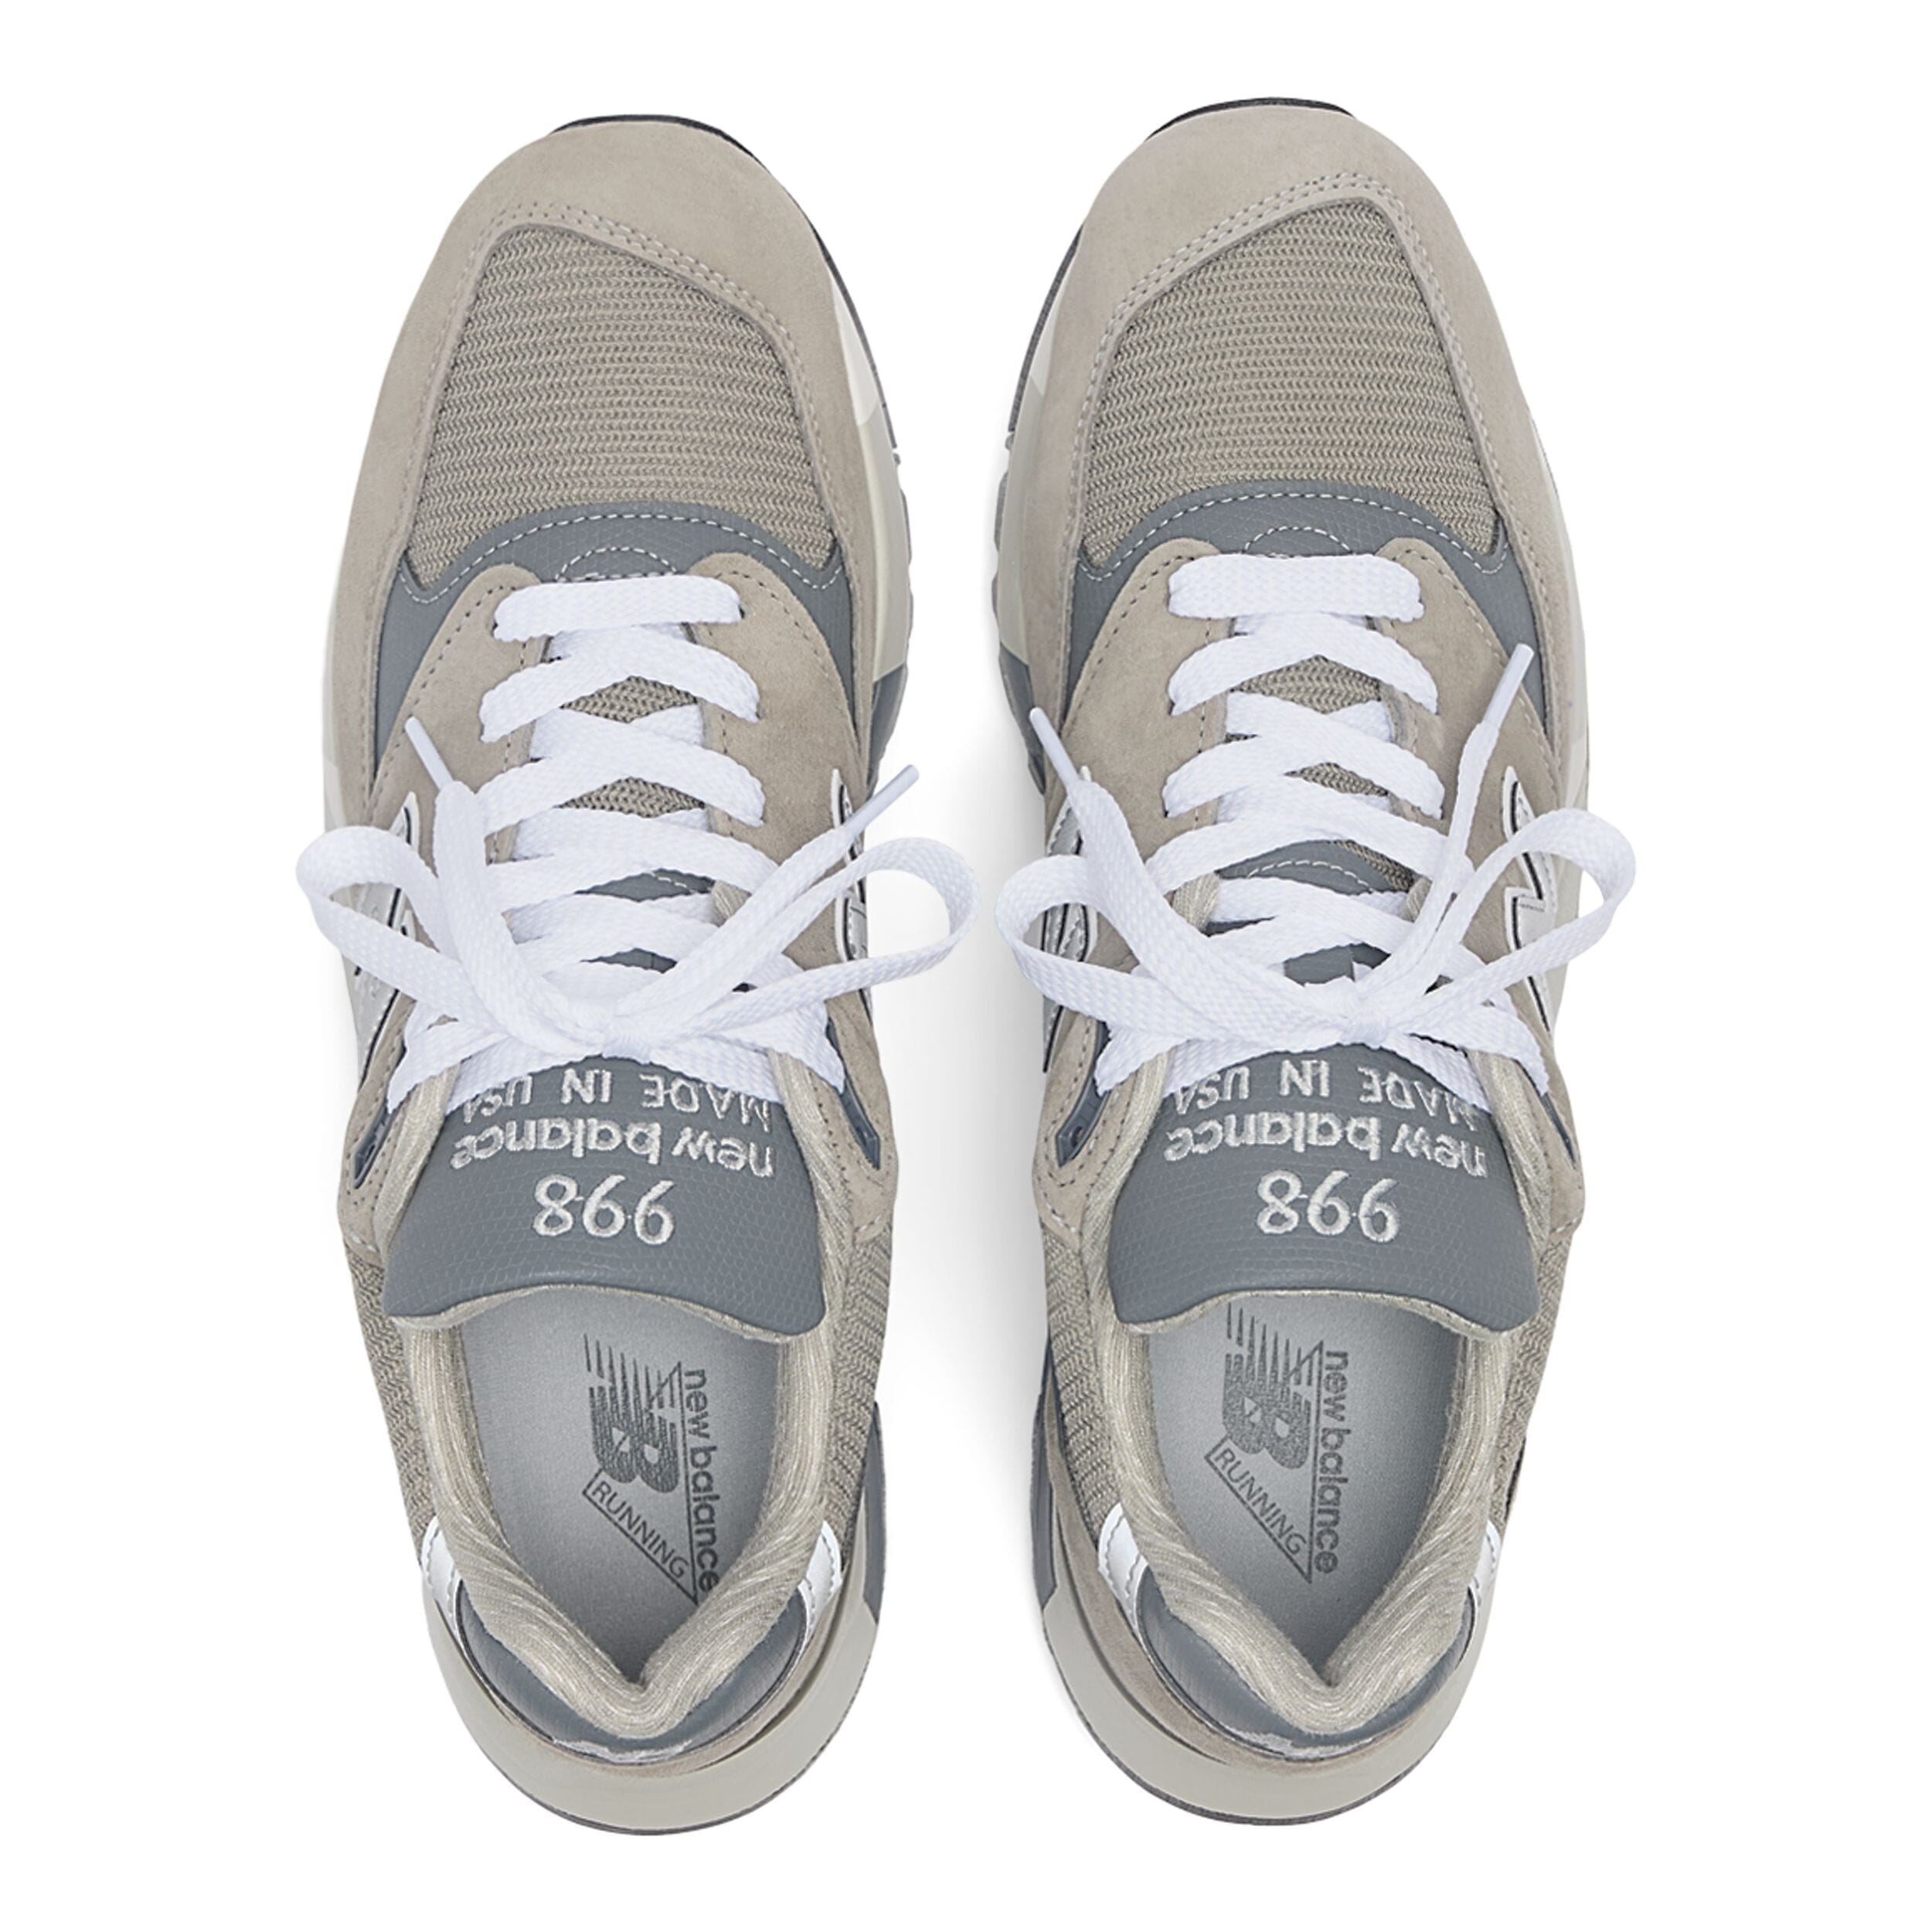 NEW BALANCE - Sneakers U998GR - Grigio Scarpe Donna NEW BALANCE - Collezione Donna 